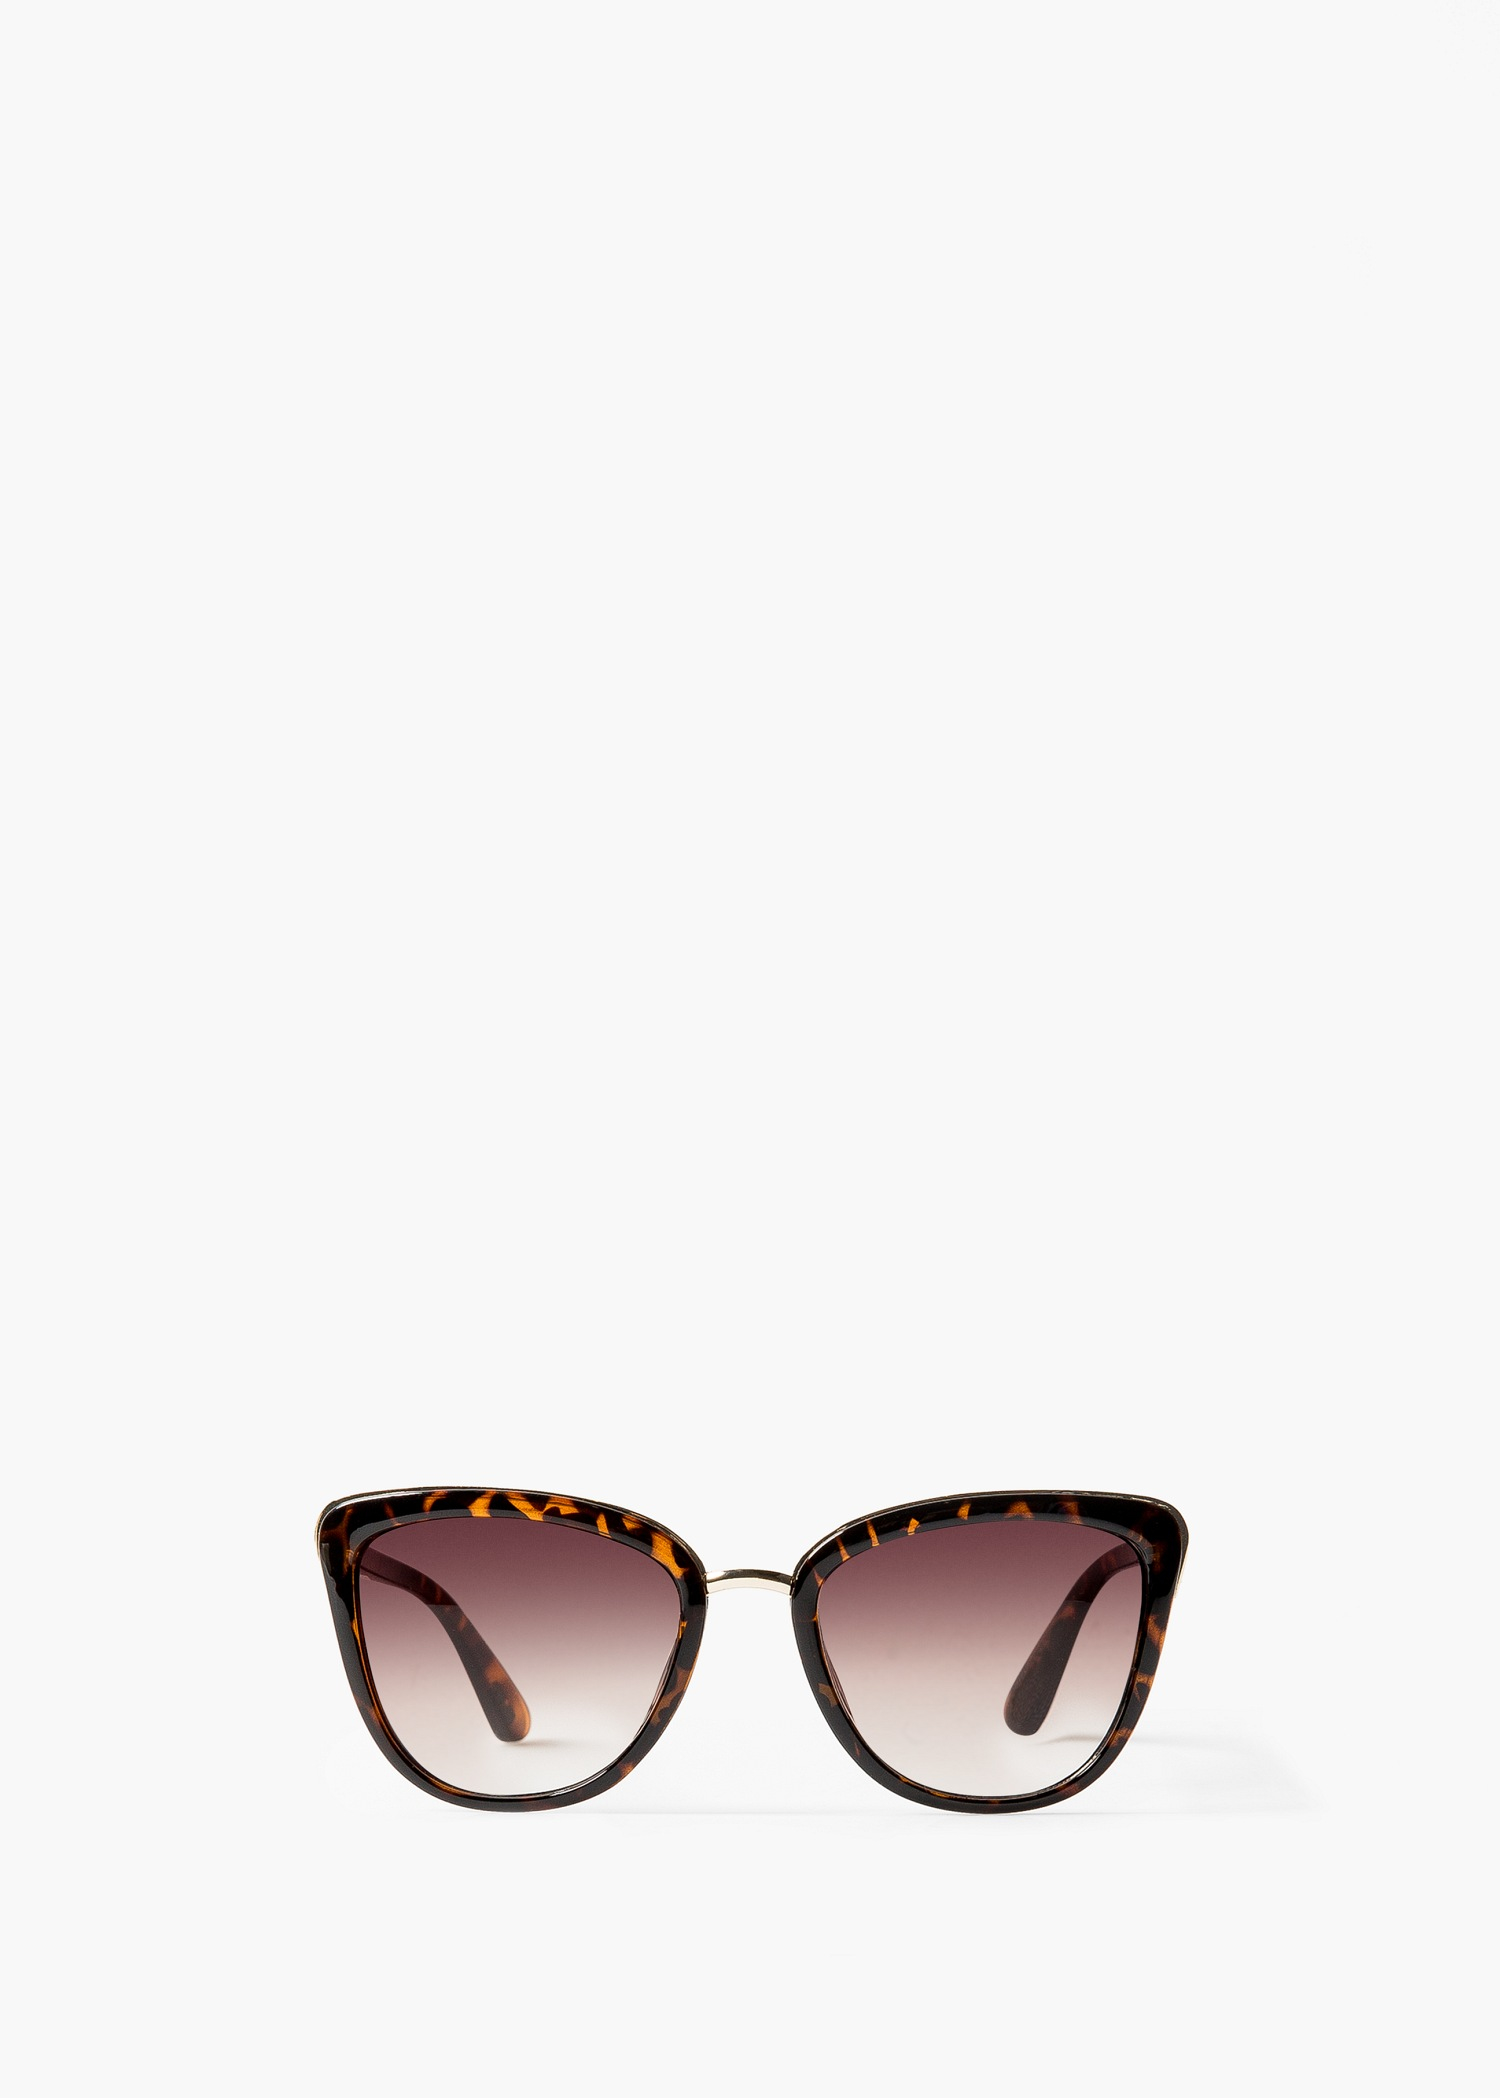 Lyst - Mango Tortoiseshell Sunglasses in Brown